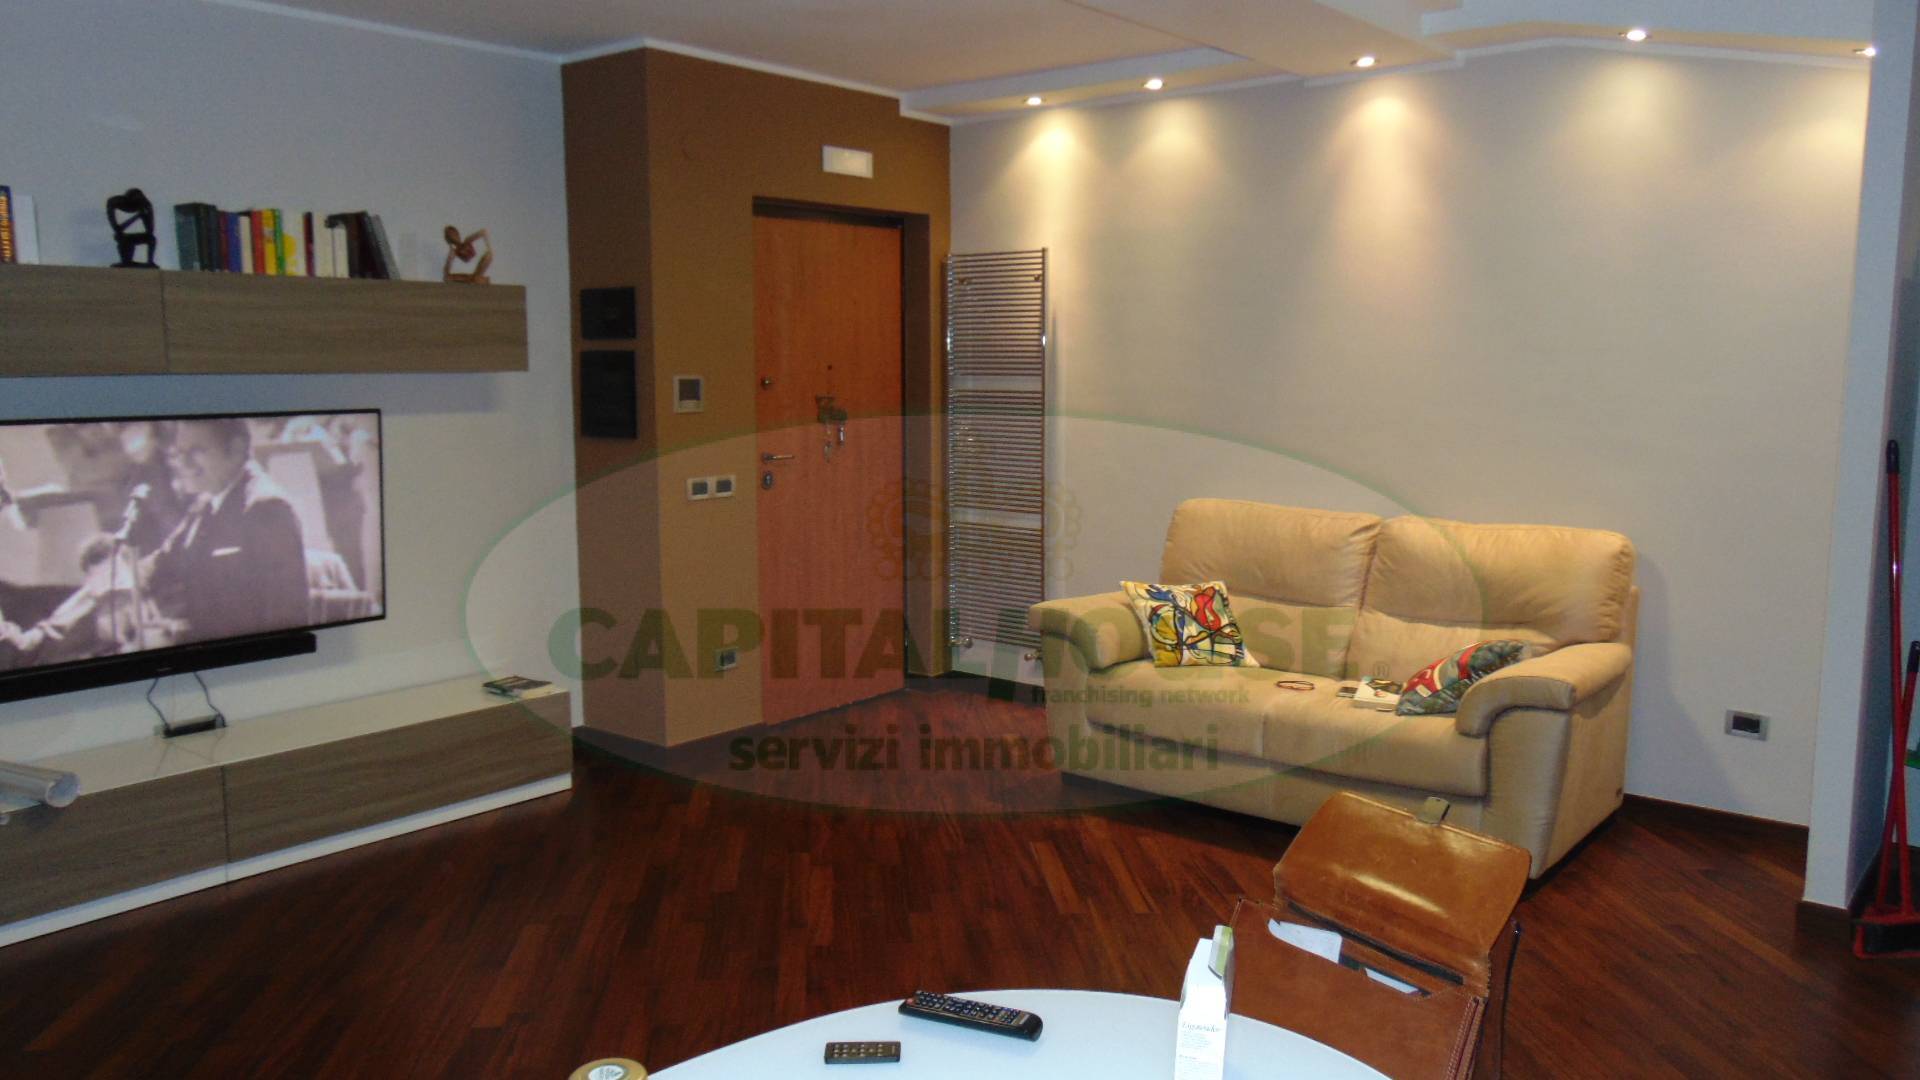 Appartamento in vendita a Quadrelle, 3 locali, prezzo € 126.000 | PortaleAgenzieImmobiliari.it